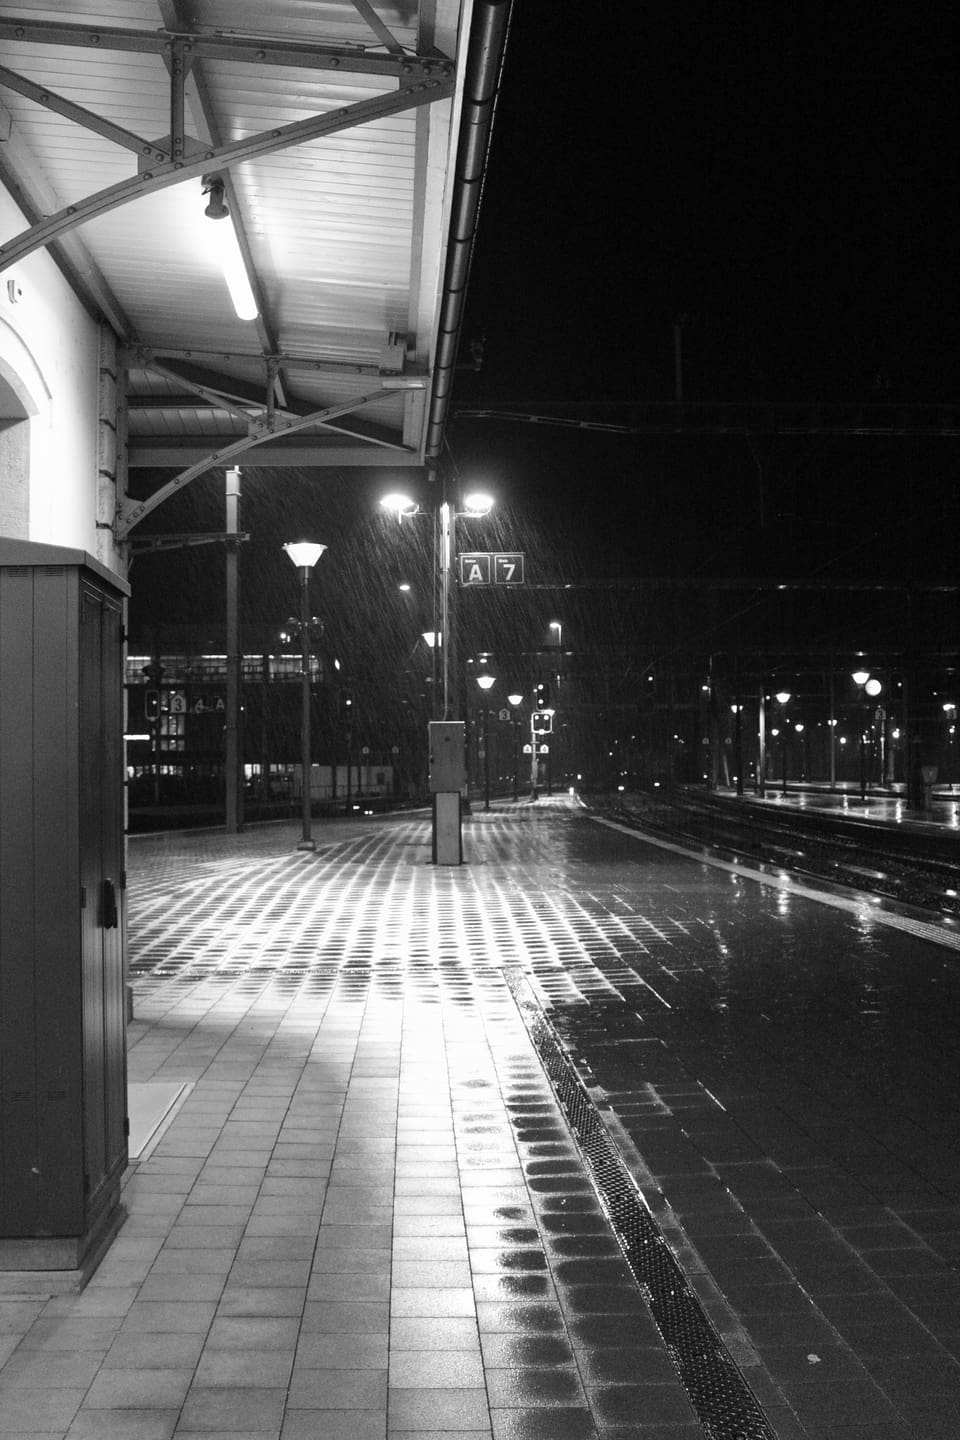 Verregneter Bahnsteig in schwarzweiss.